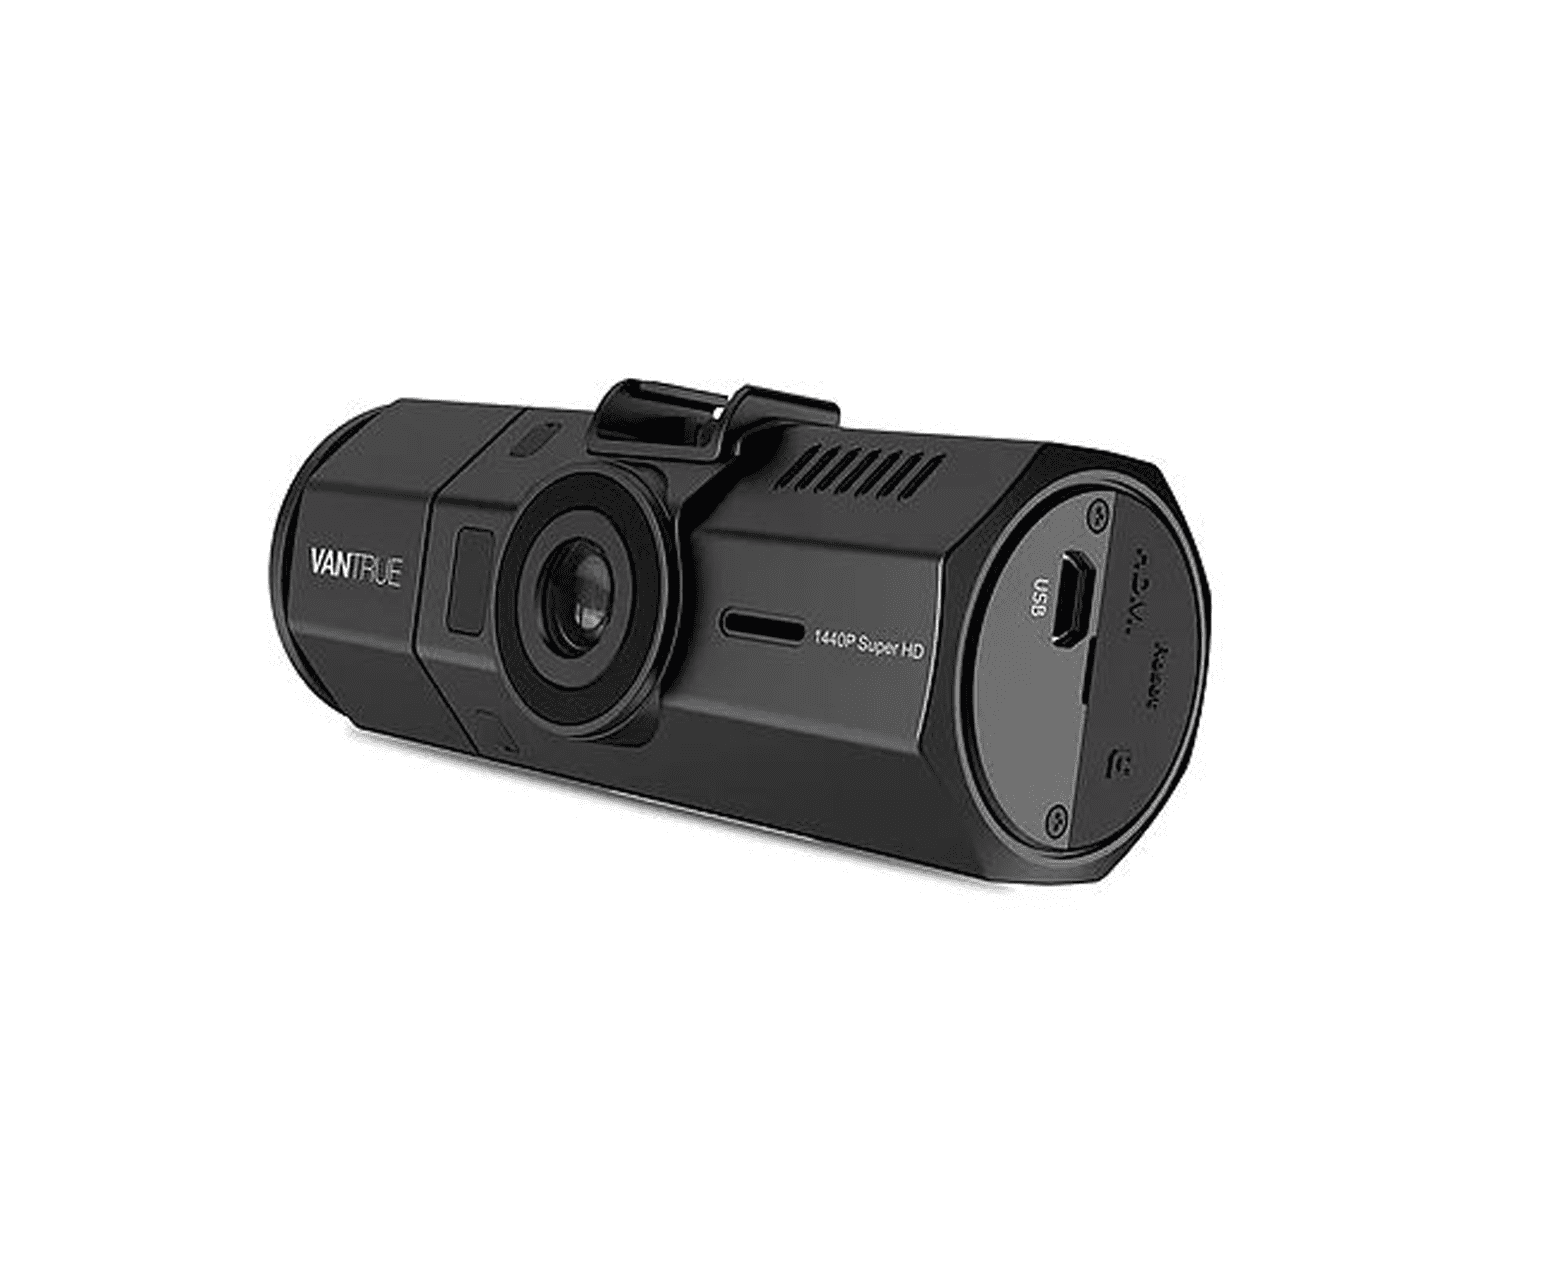 Vantrue N2 Pro Dual 1080p Dash Cam